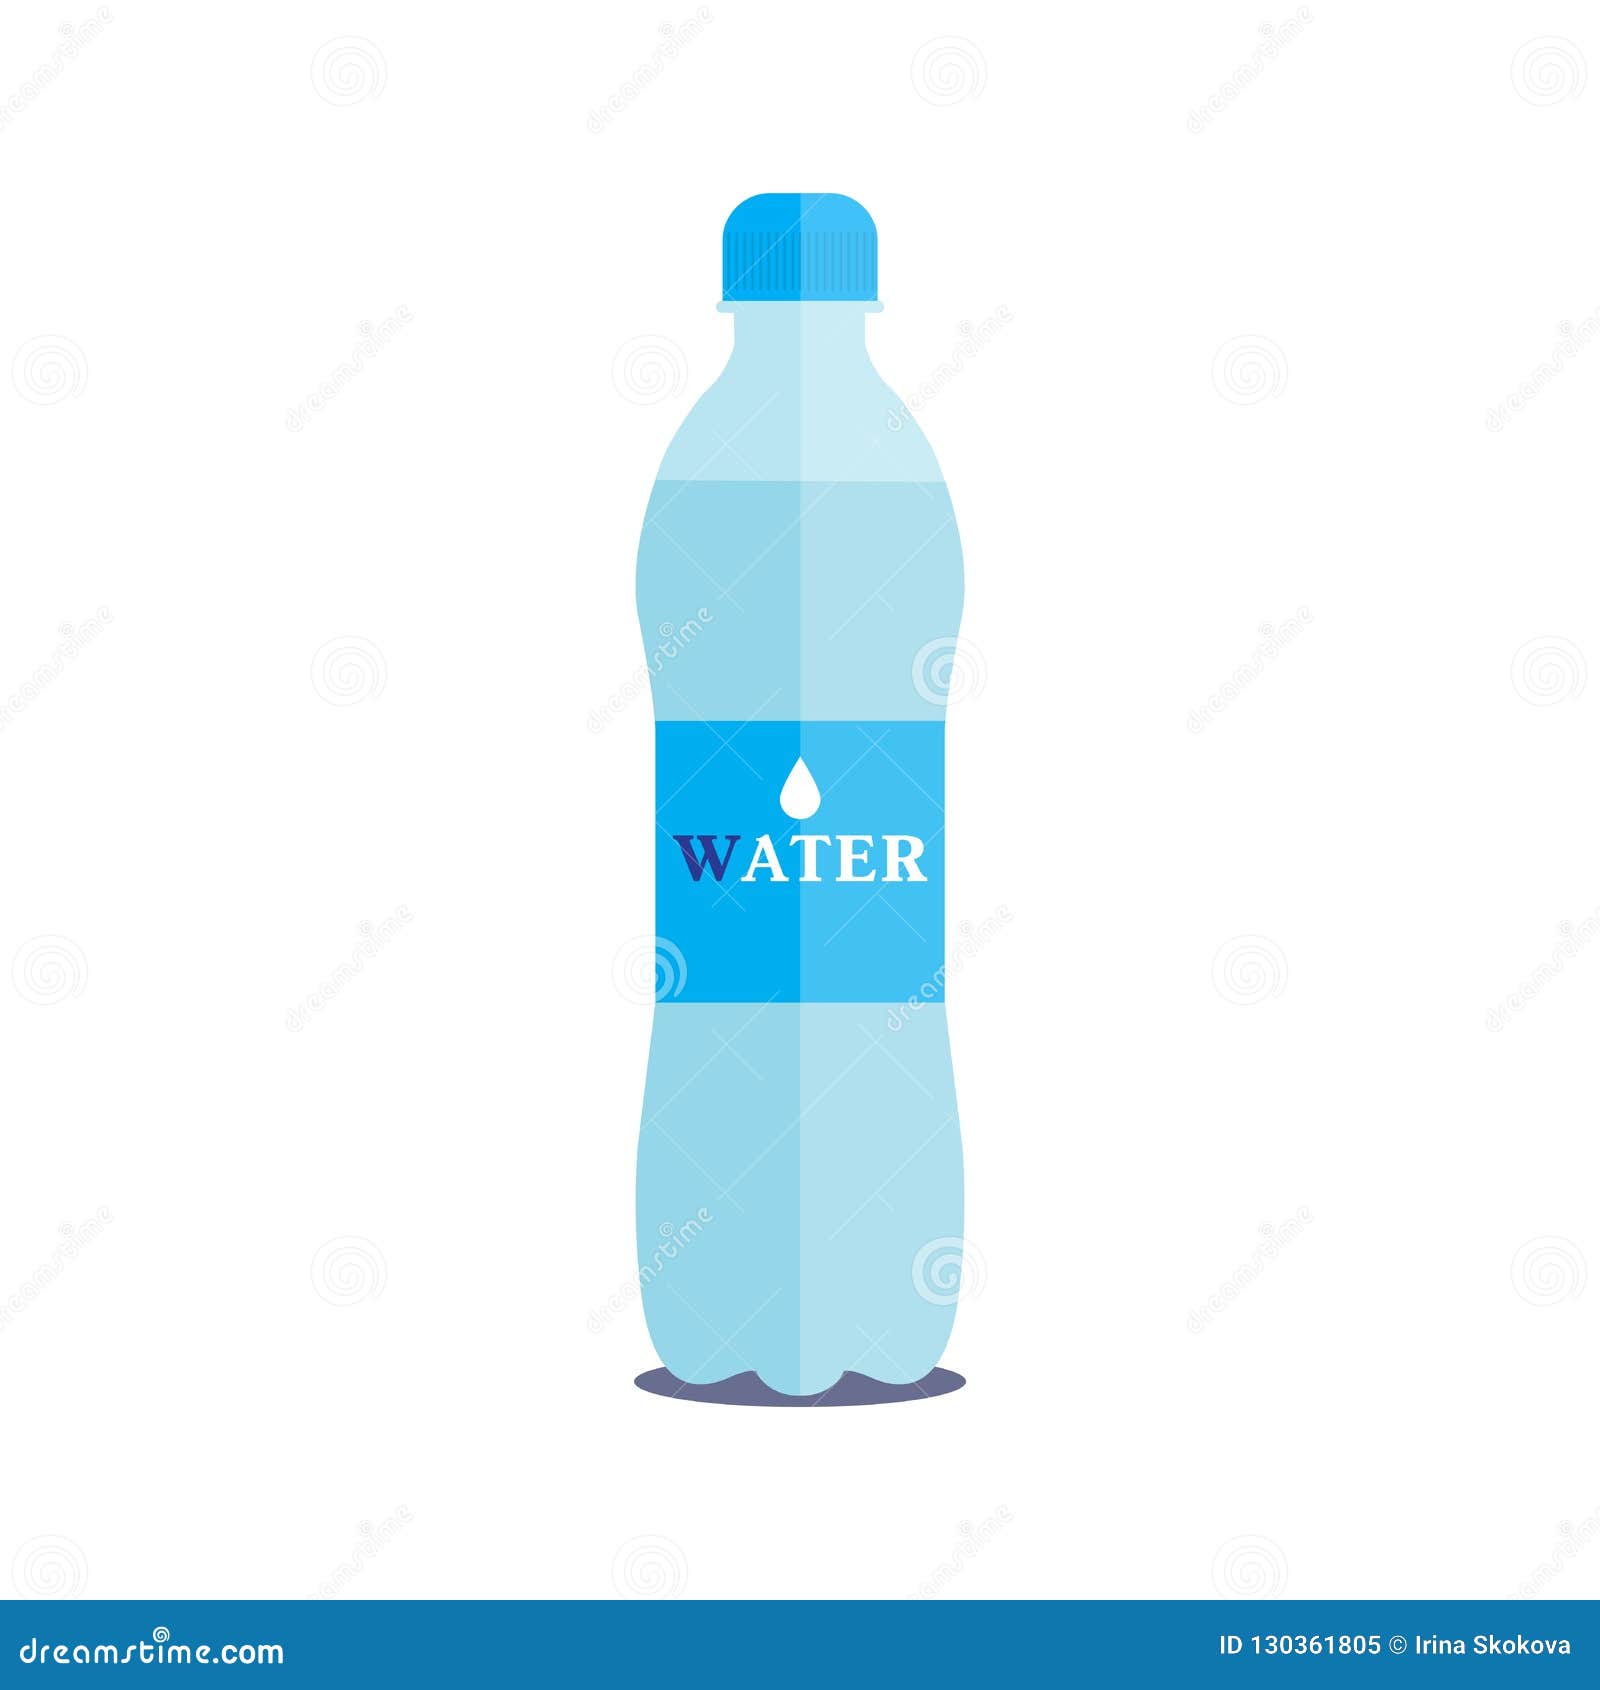 Botella de Agua 1 Litro Ekco Motivacional con Tapa de Rosca